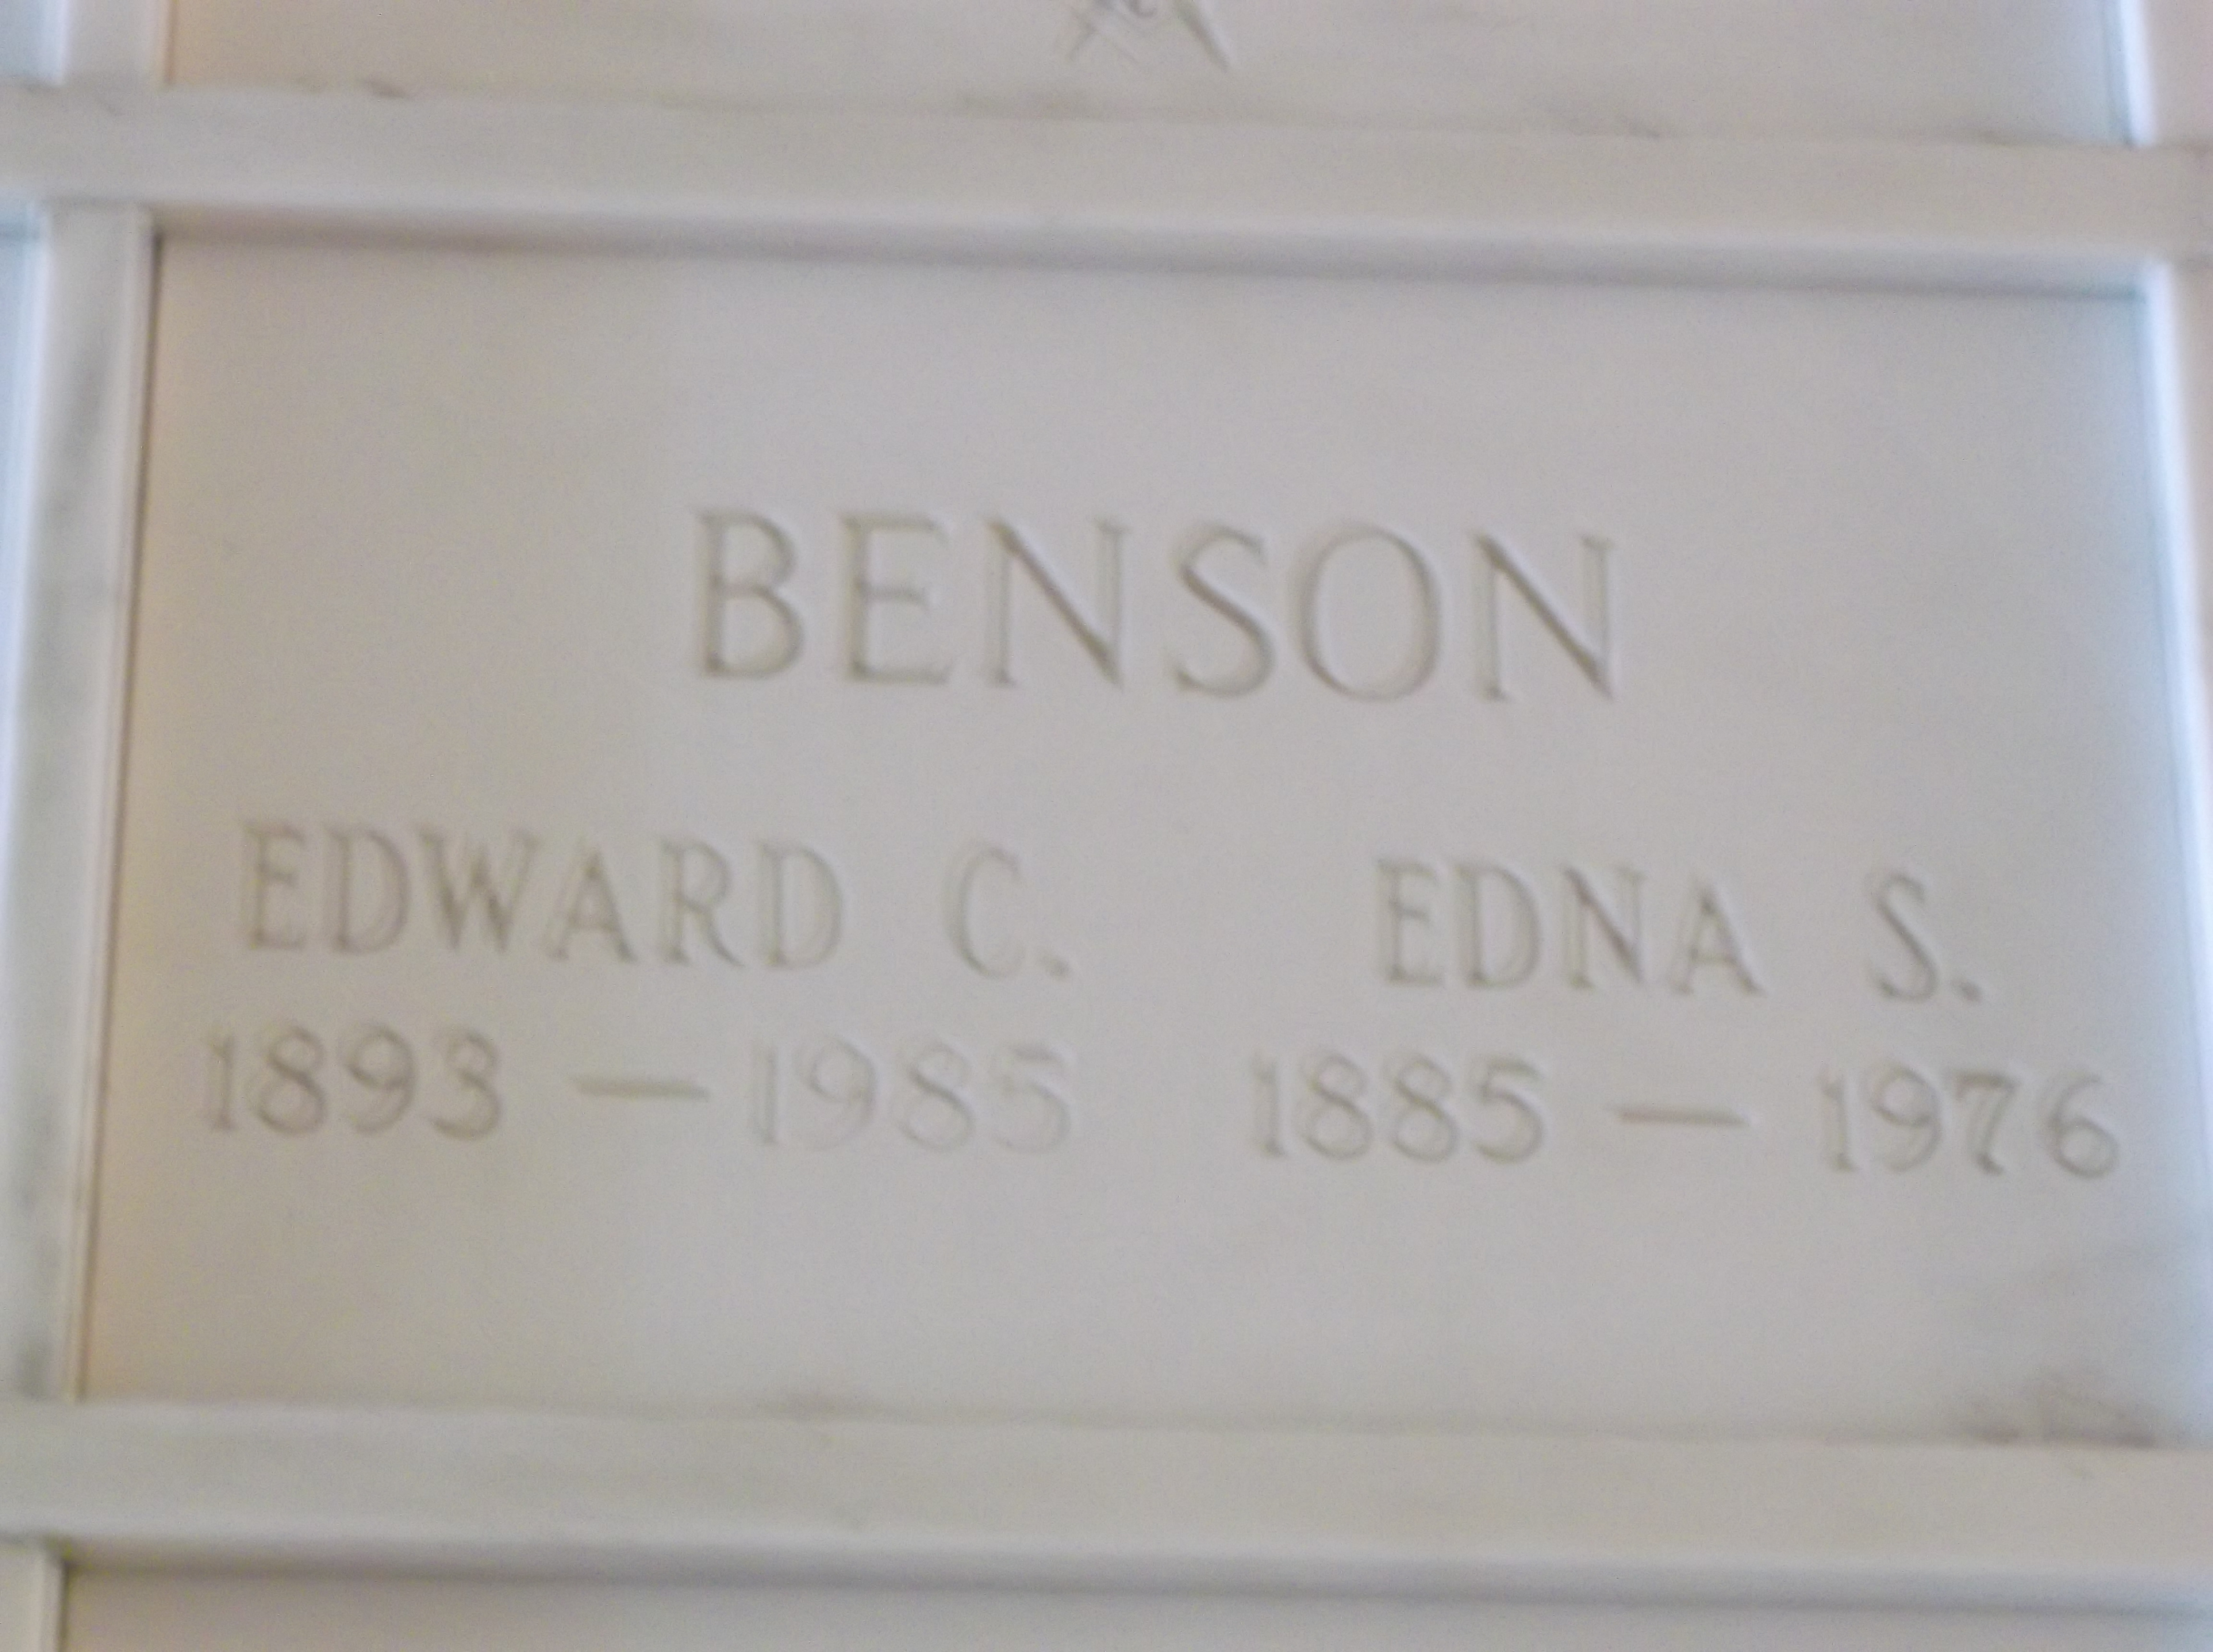 Edna S Benson